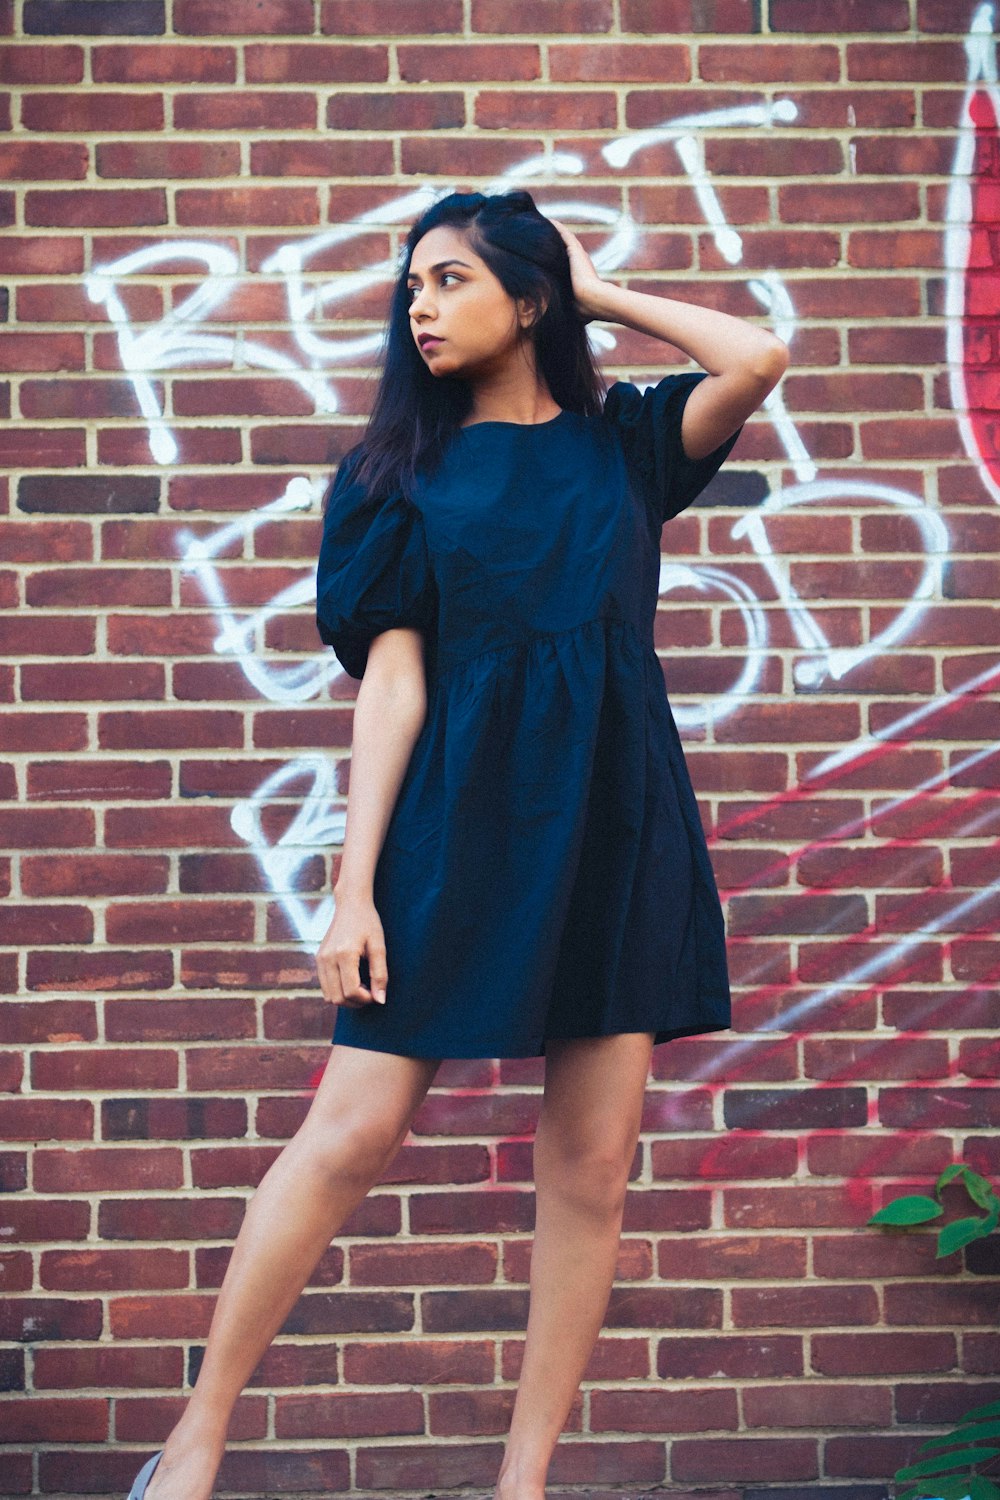 Femme en robe bleue debout sur un mur de briques brunes